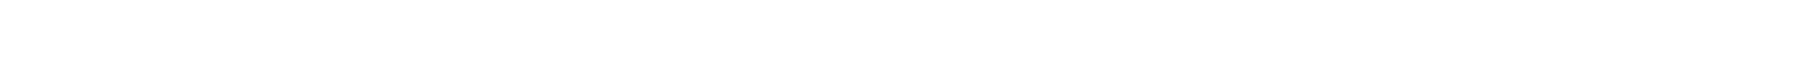 Gladstone Commercial logo large for dark backgrounds (transparent PNG)